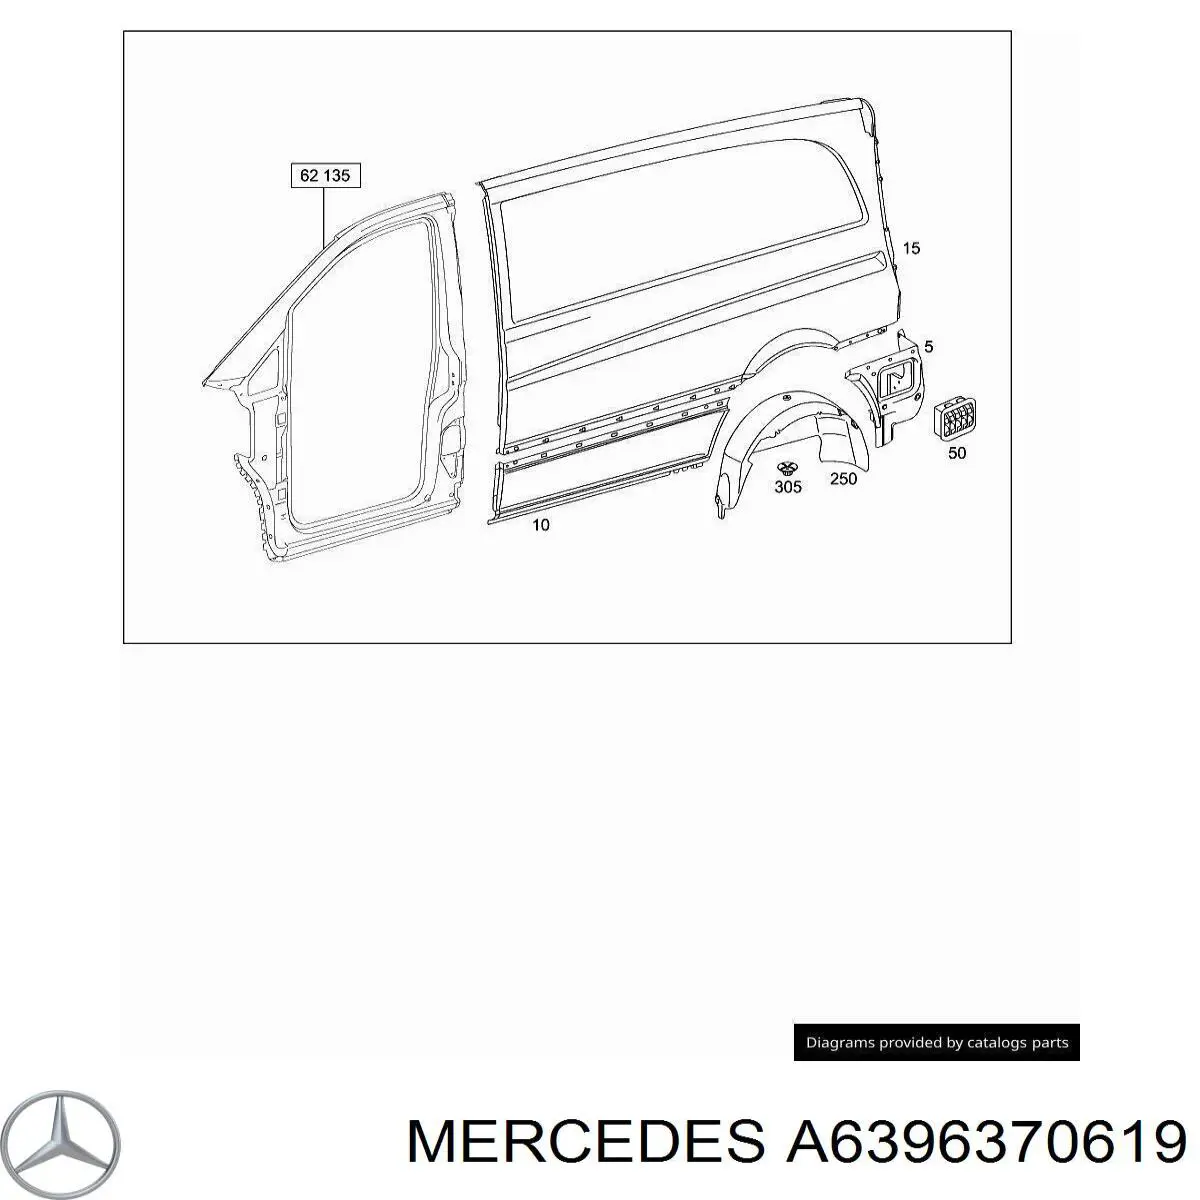 A6396370619 Mercedes боковина кузова левая